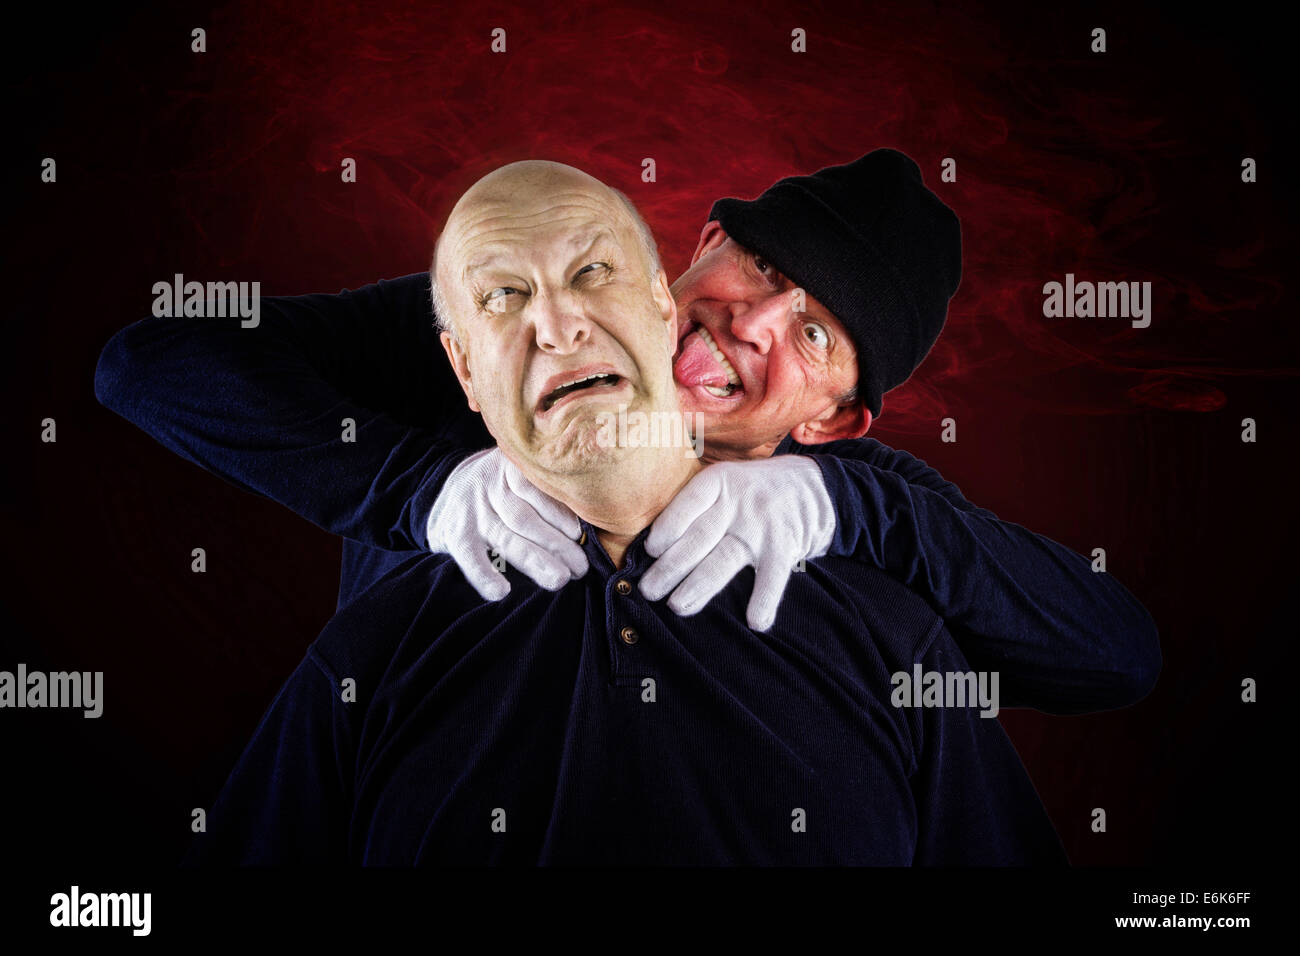 Senior Citizen, 62 años, asfixia a su pareja, de 55 años, tras una disputa Foto de stock